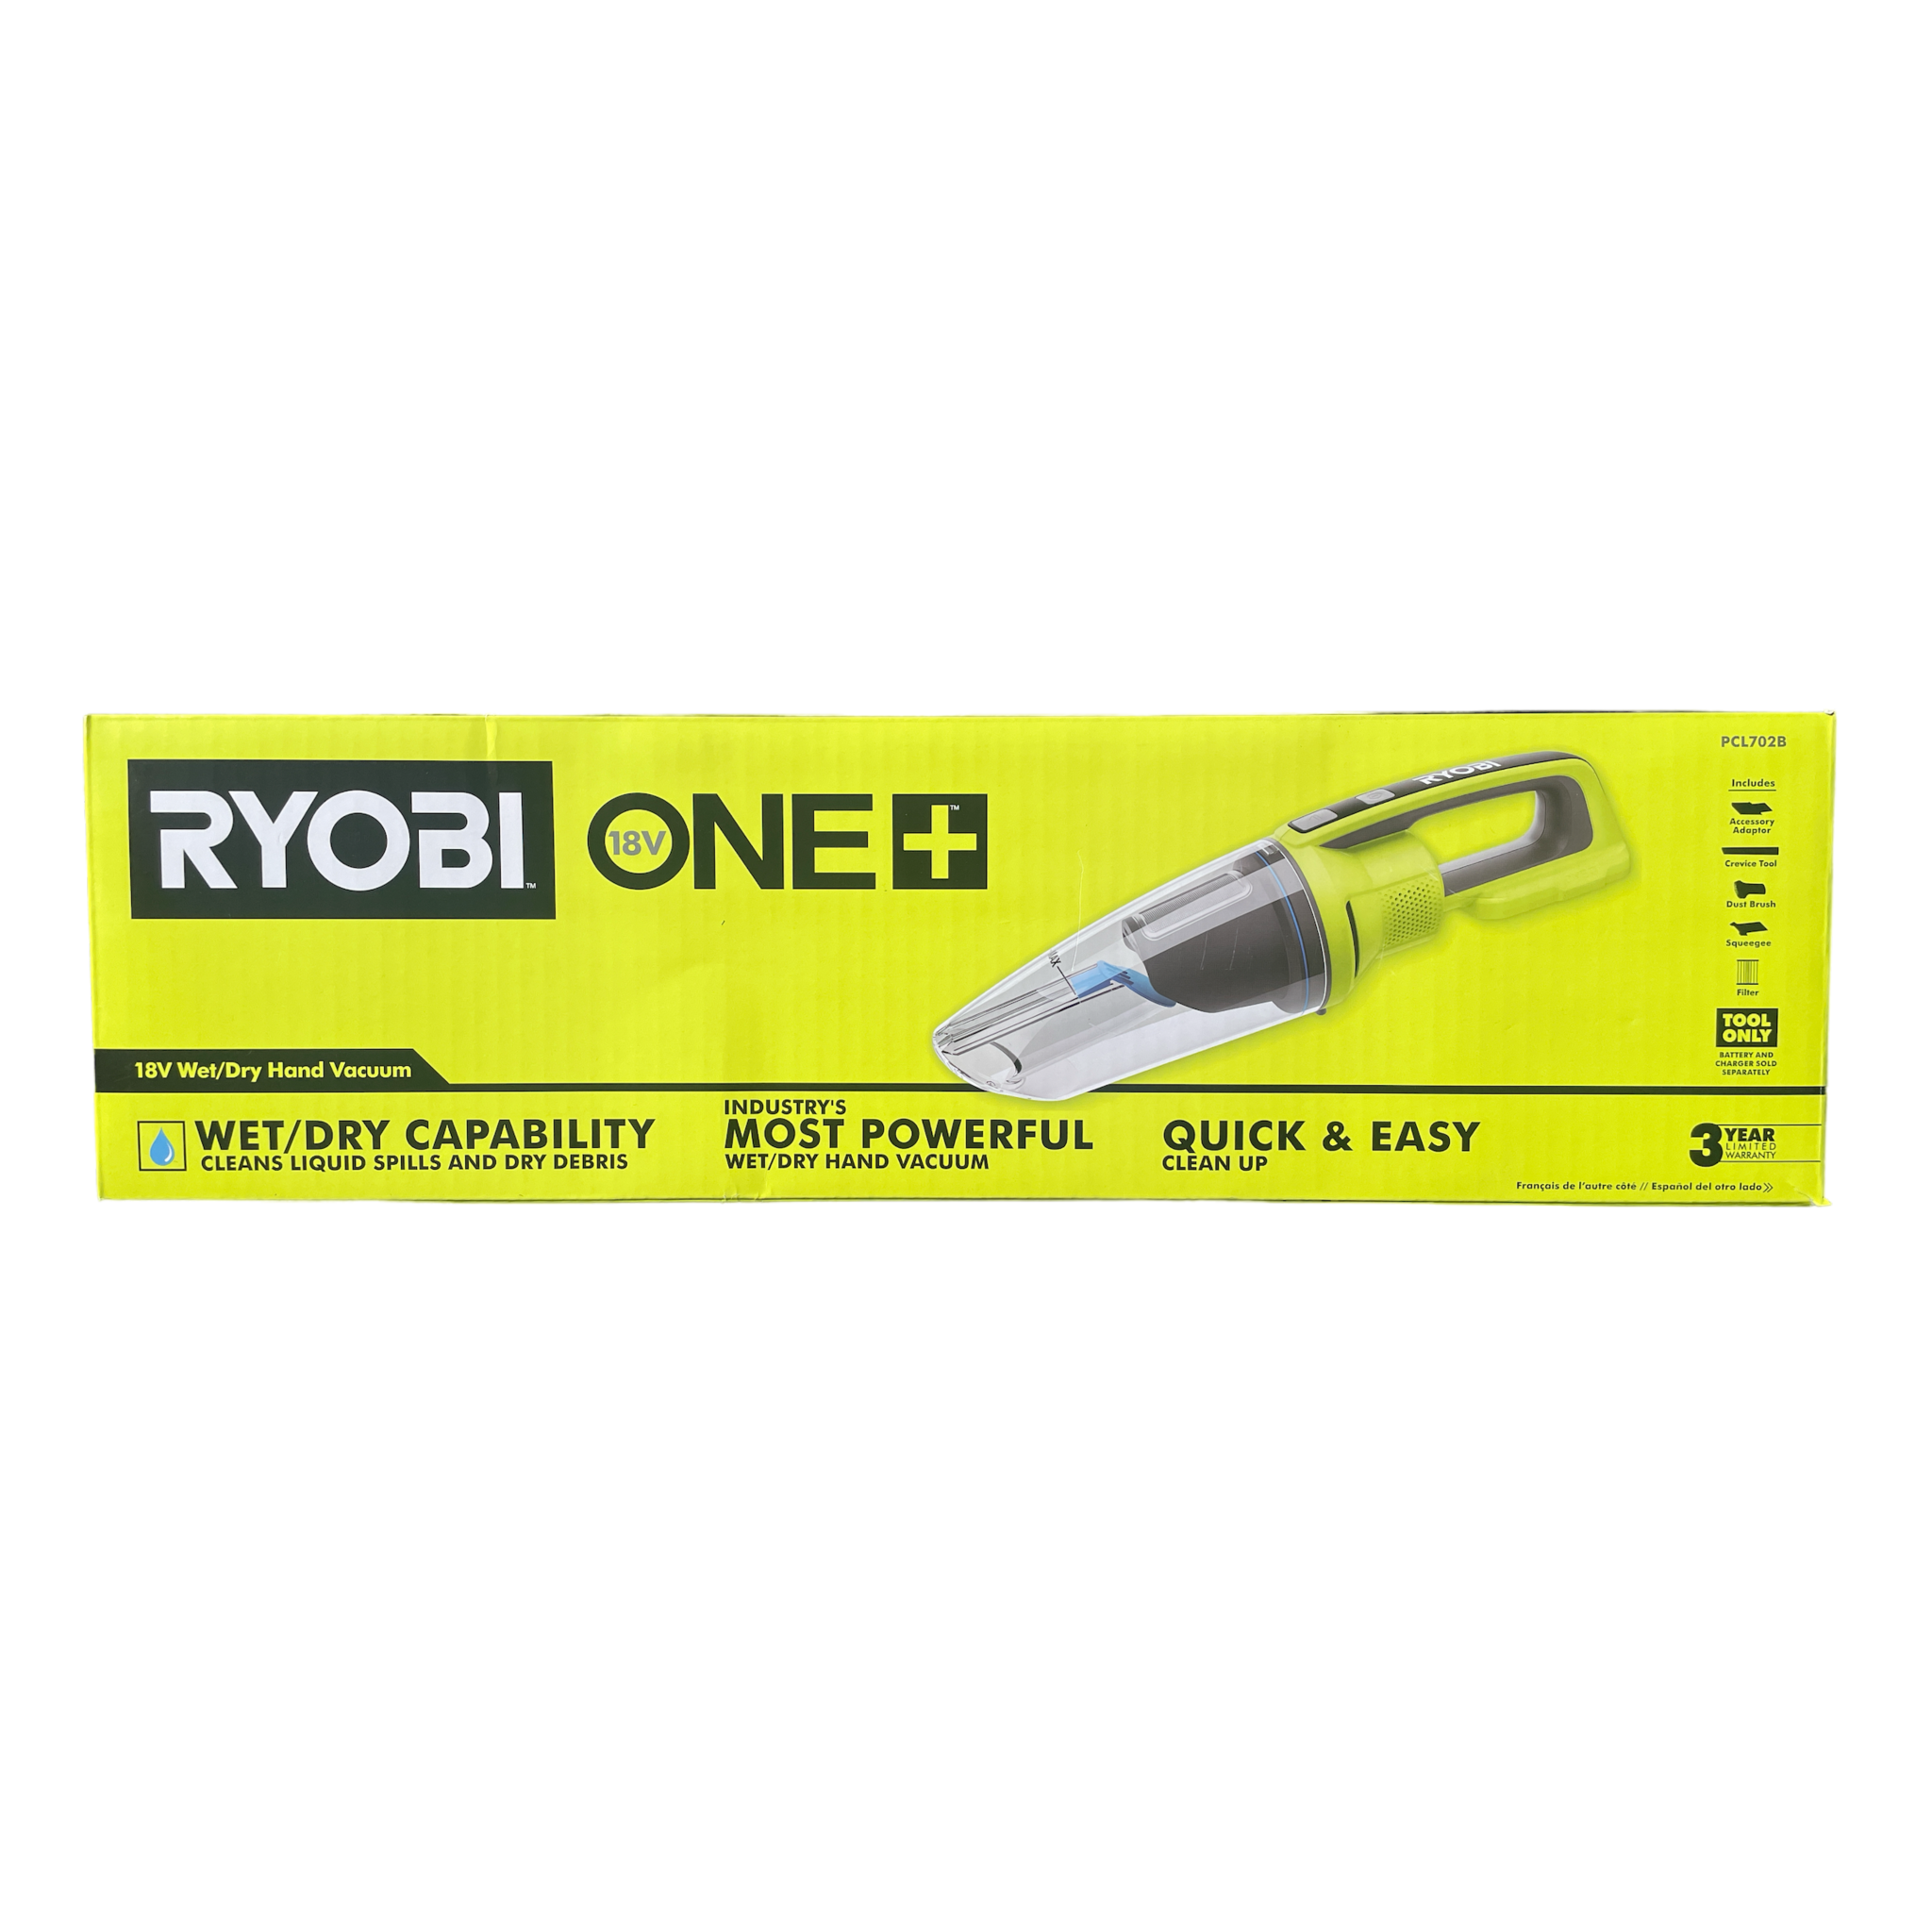 18V ONE+ POWERED BRUSH HAND VACUUM KIT - RYOBI Tools